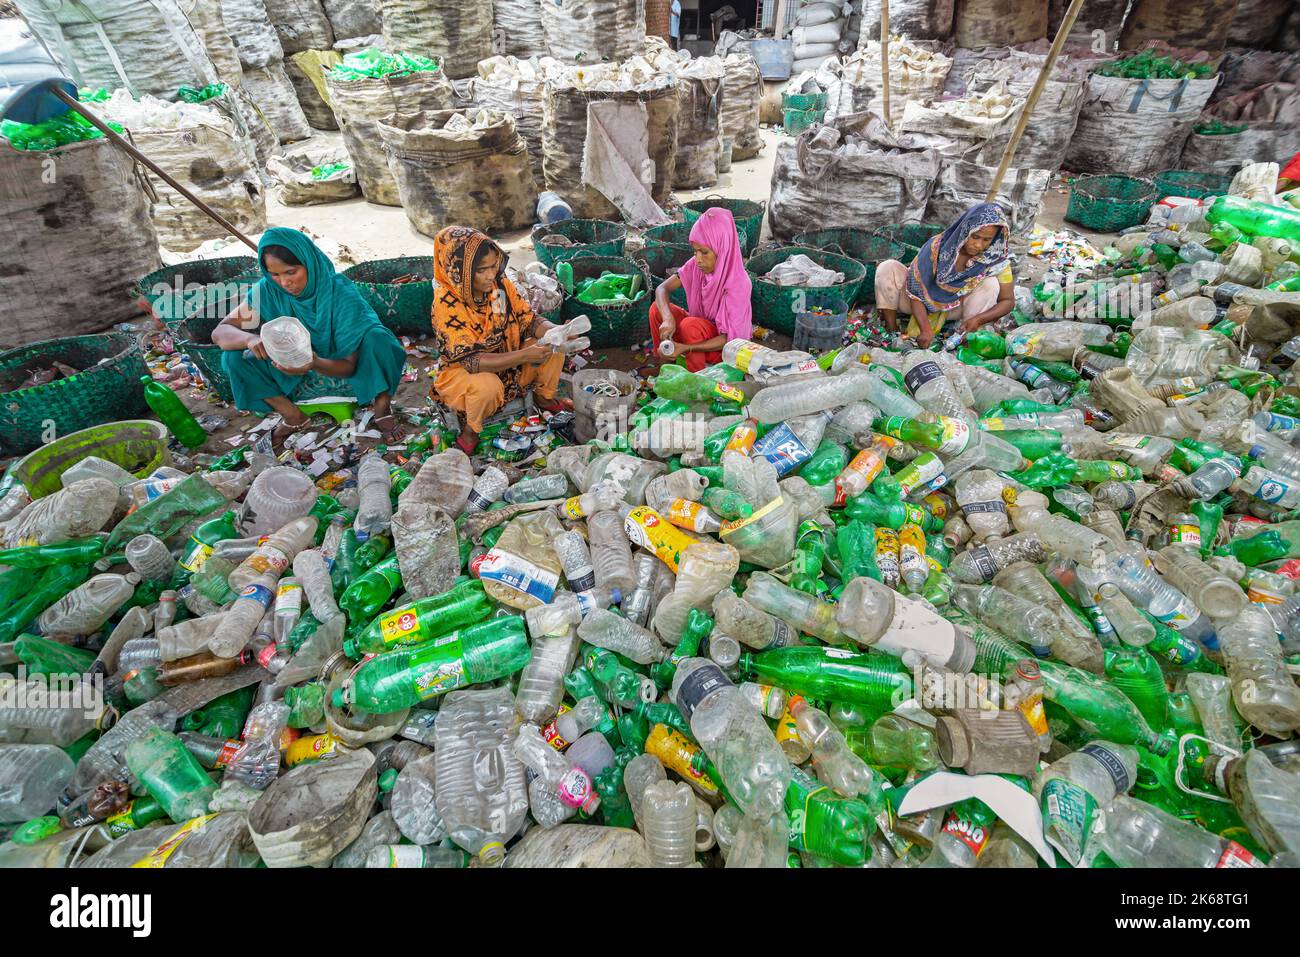 Les travailleurs trient les bouteilles en plastique usagées dans une usine de recyclage. Le recyclage des plastiques est le meilleur moyen de rendre notre environnement propre et sûr. Banque D'Images